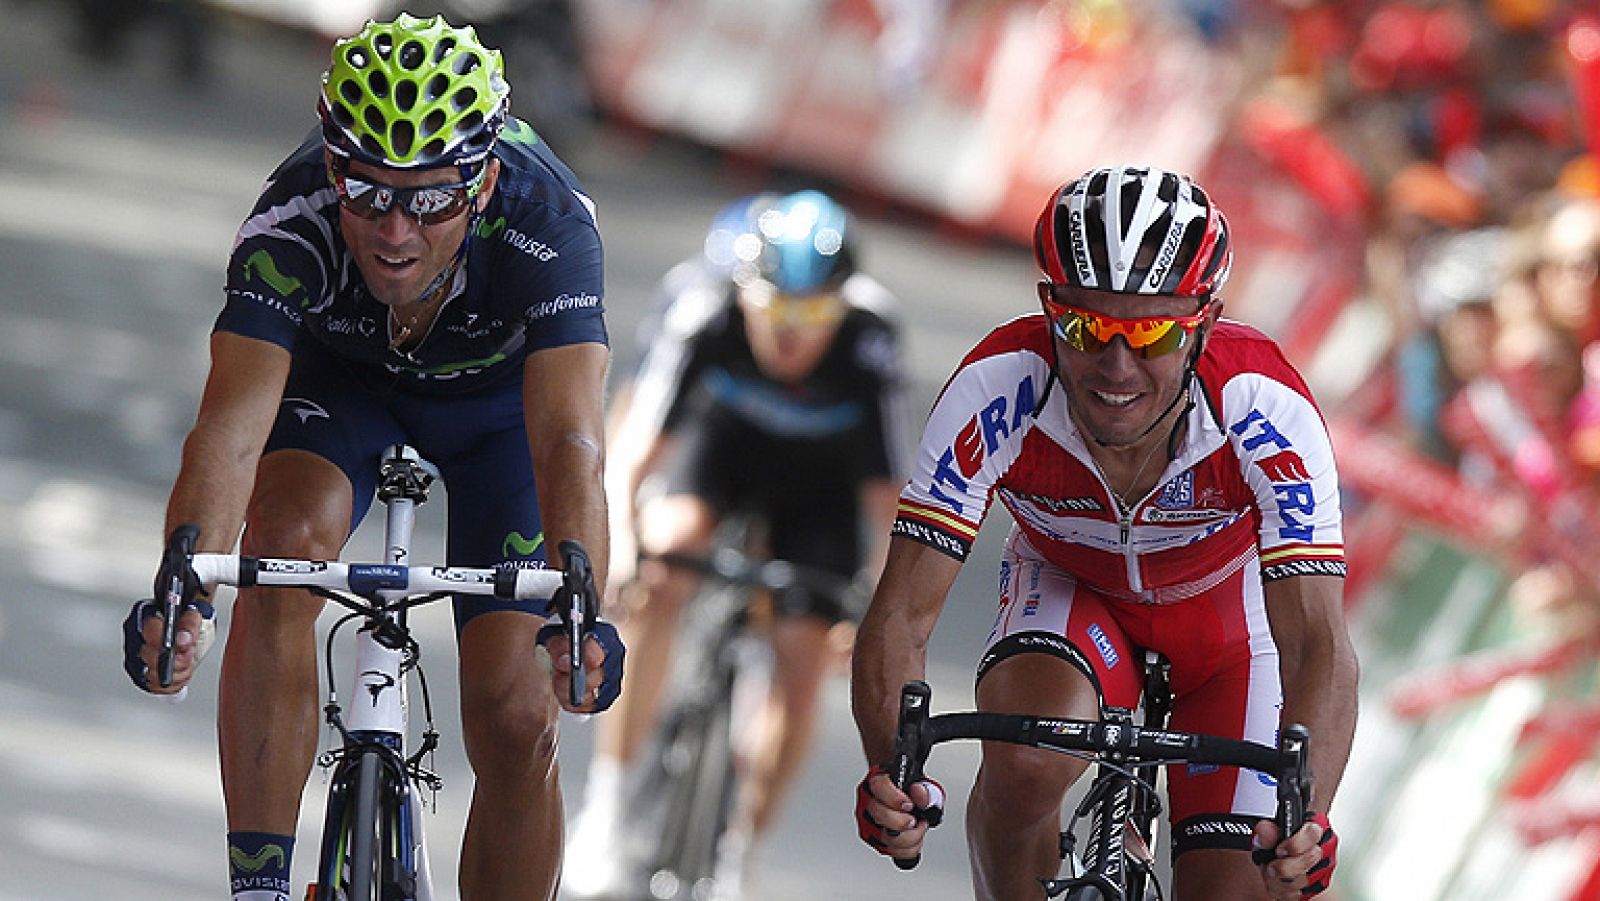 El español Alejandro Valverde, del Movistar, ha sido el ganador de la tercera etapa de la Vuelta a España disputada entre Oion y el Alto de Arrate, de 155,3 kilómetros, primer final elevado de la carrera, donde además se enfundó el maillot de líder.